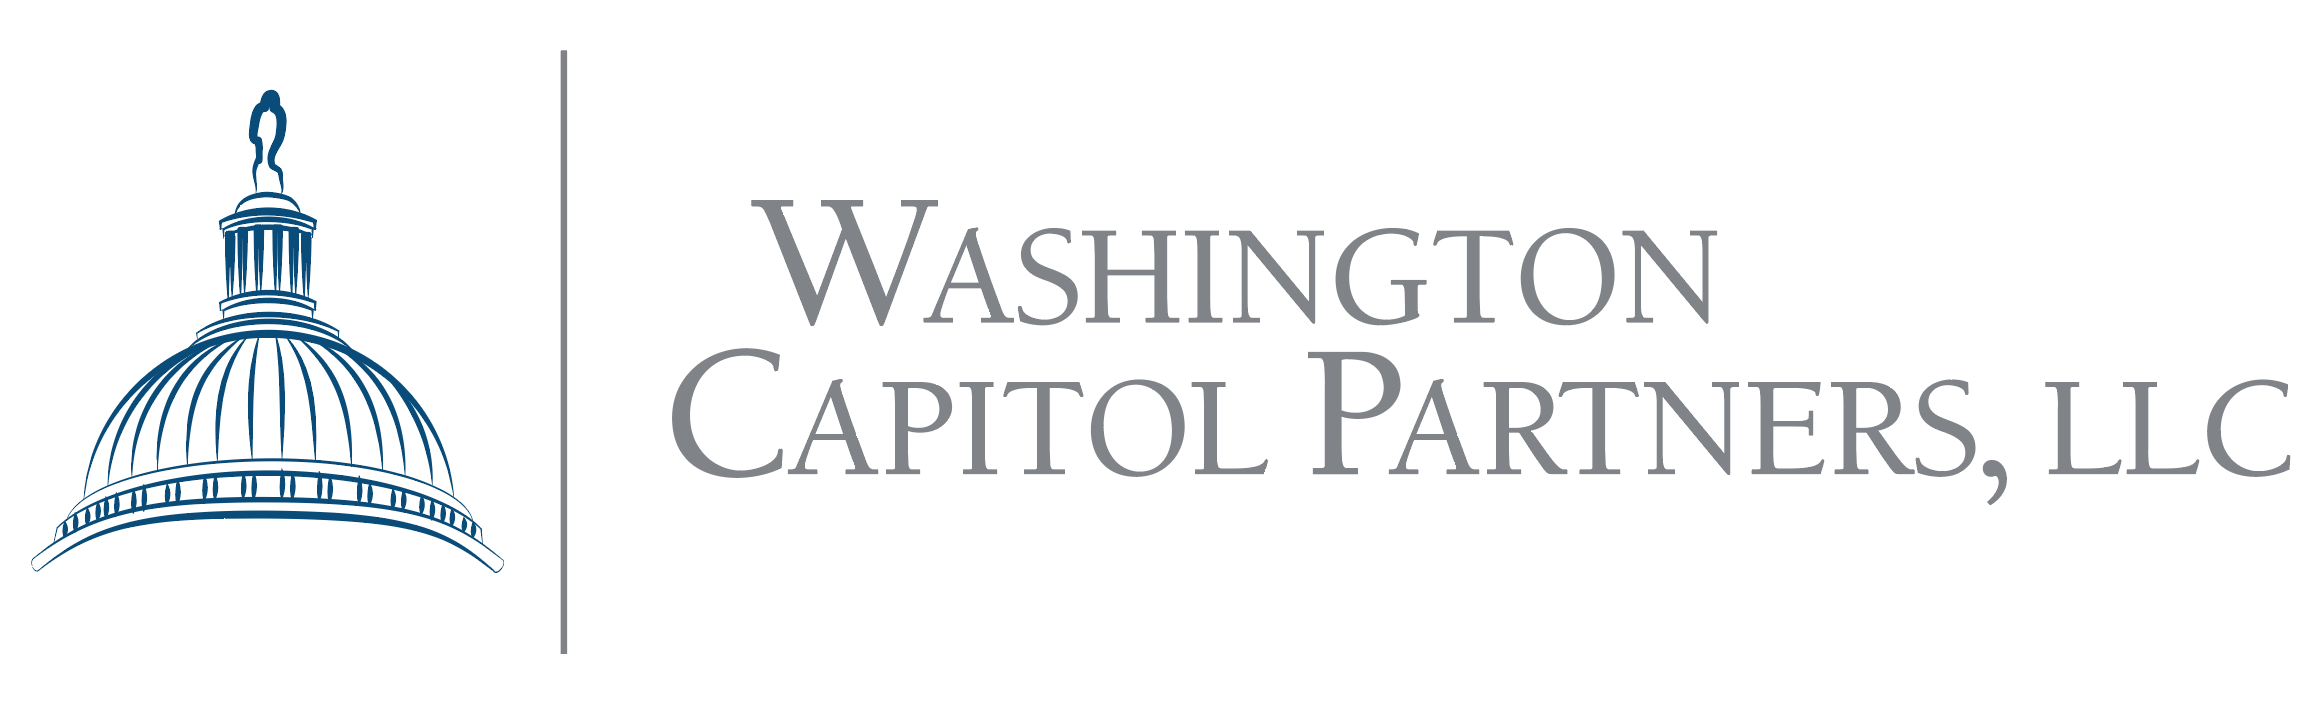 Washington Capitol Partners